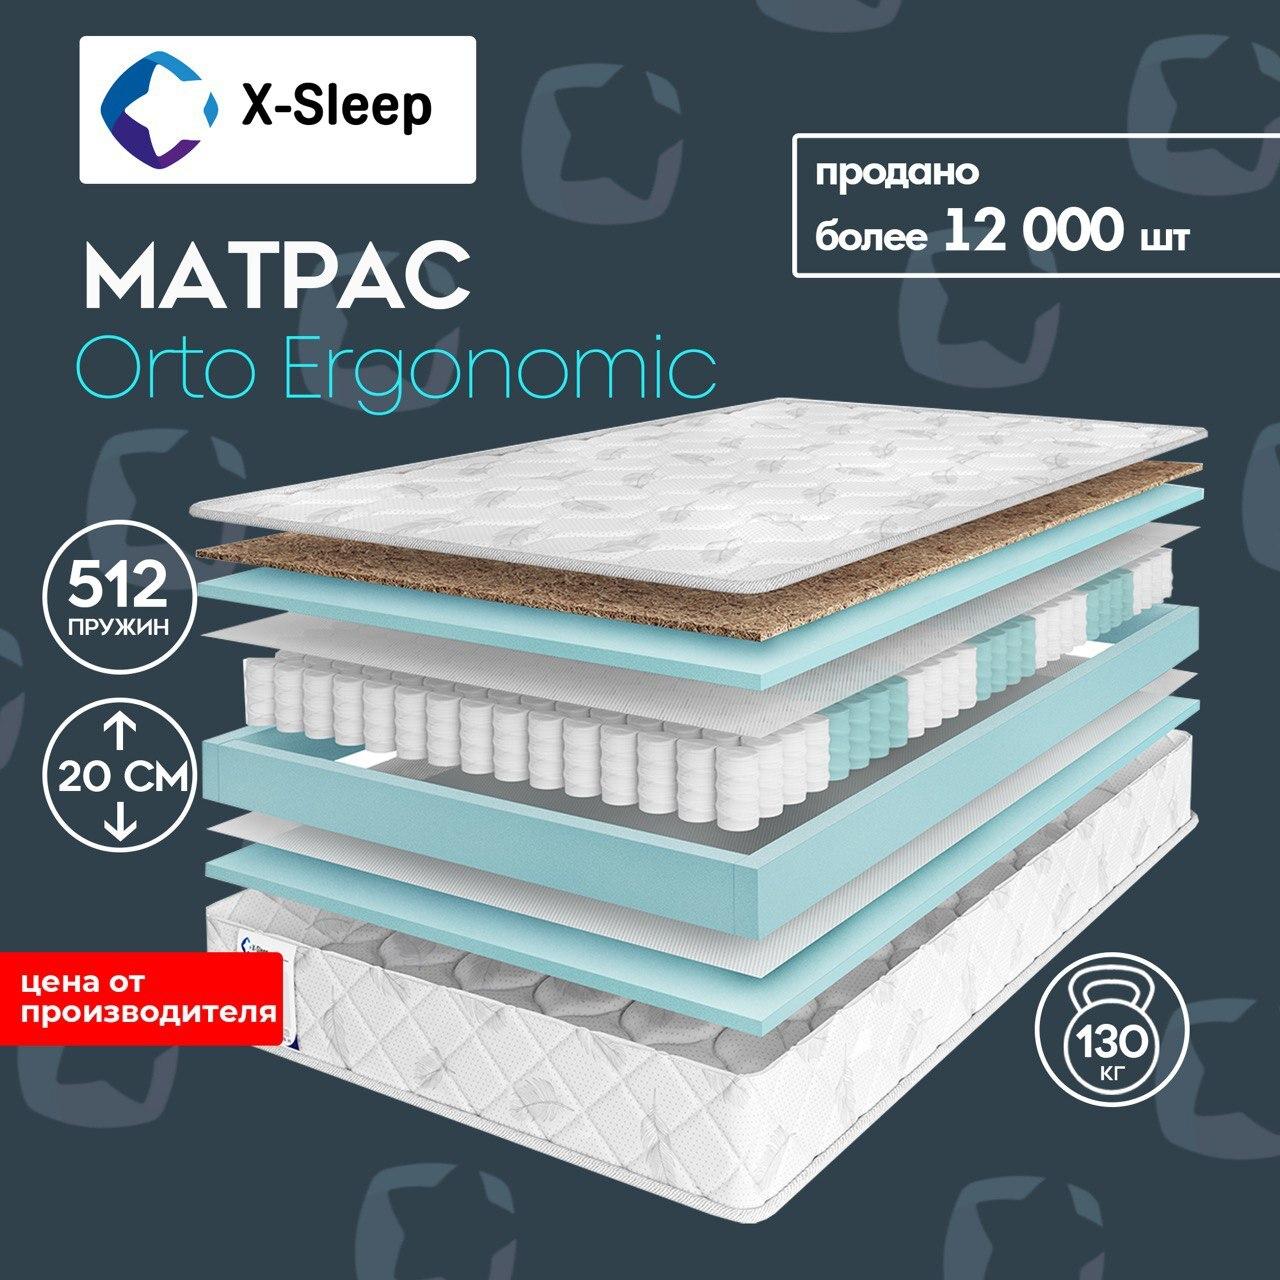 X-Sleep Матрас Orto Ergonomic, Независимые пружины, 140х190 см